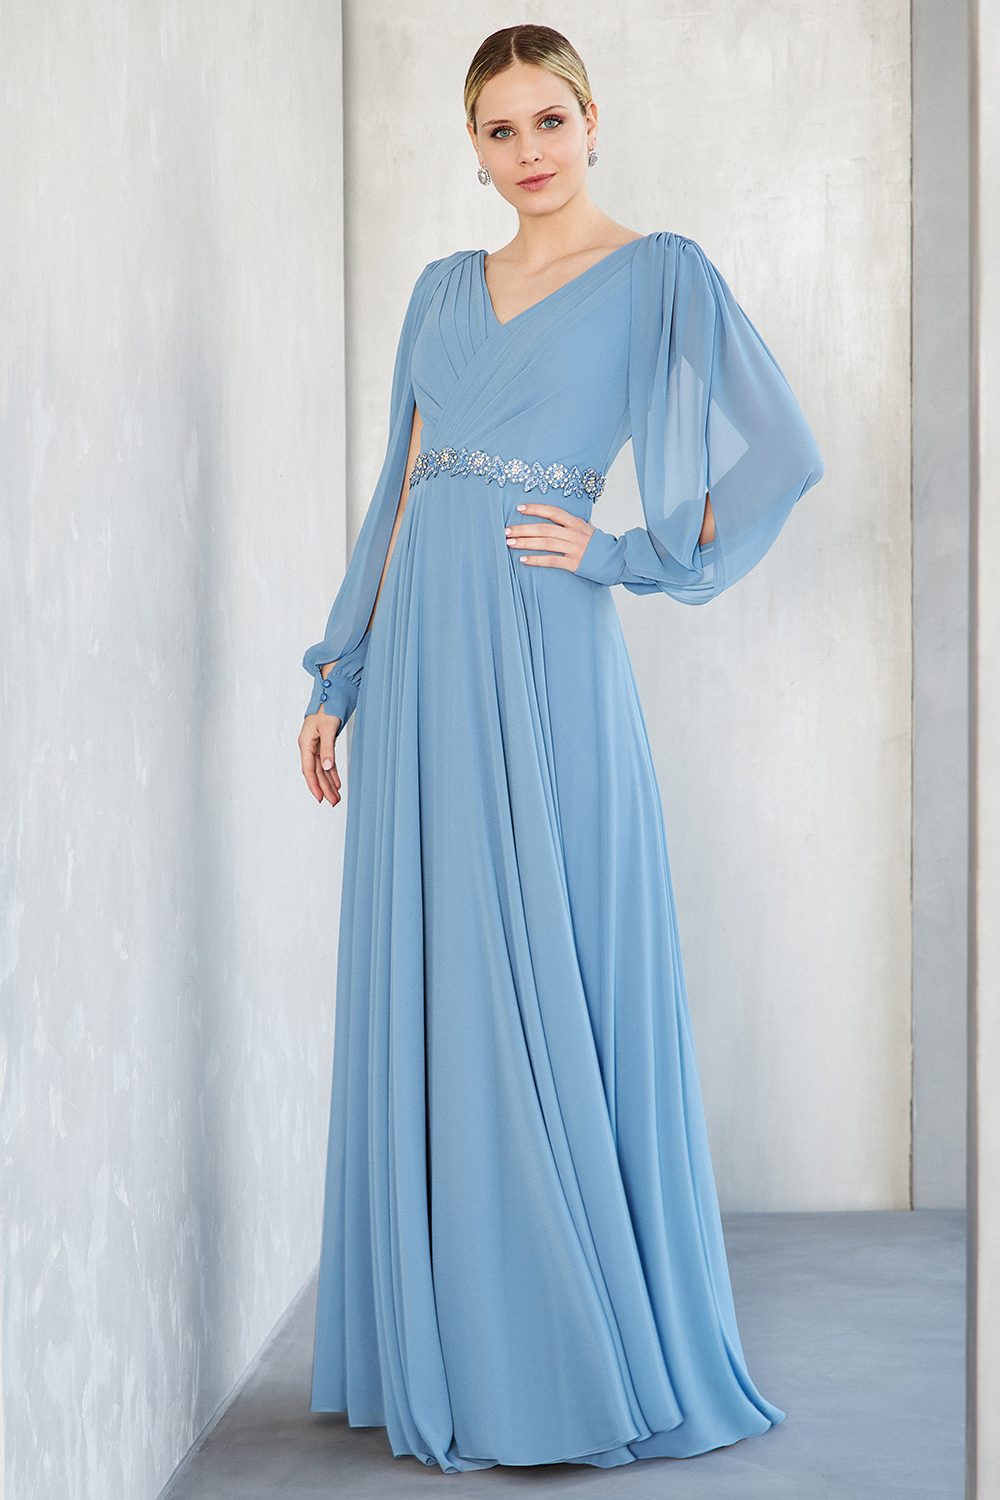 Κλασικά Φορέματα / Κλασικό φόρεμα μακρύ από μουσελίνα με κέντημα στη μέση και μακριά μανίκια